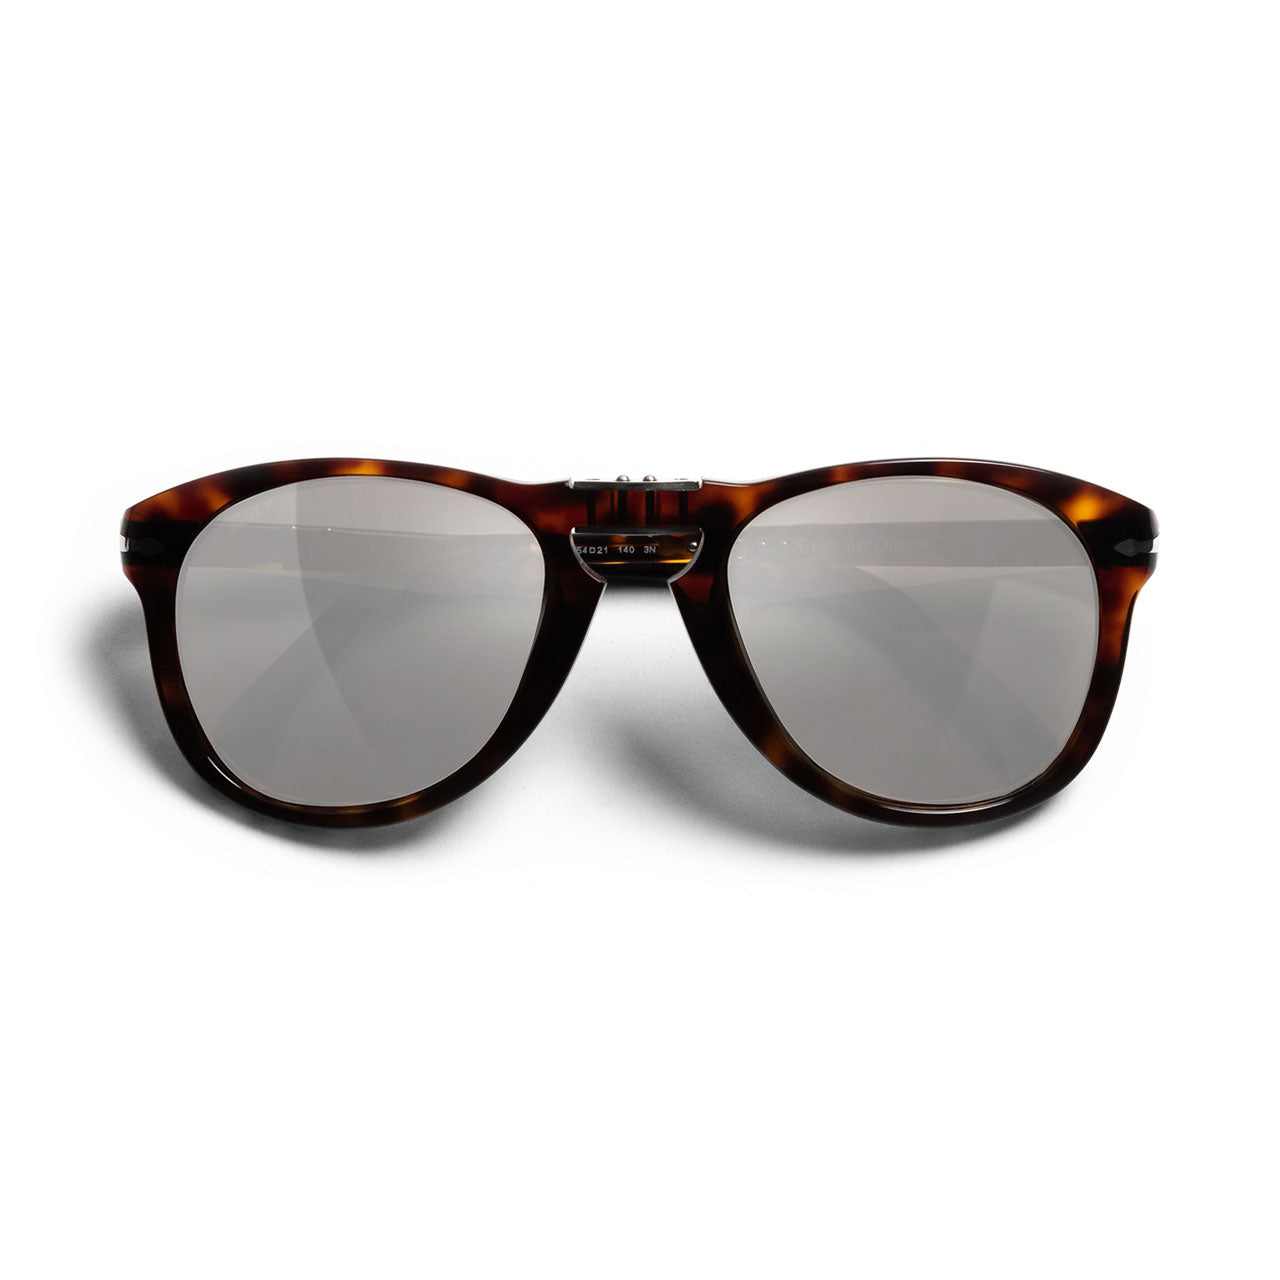 Persol 714 Steve McQueen Platinum Lens Sunglasses